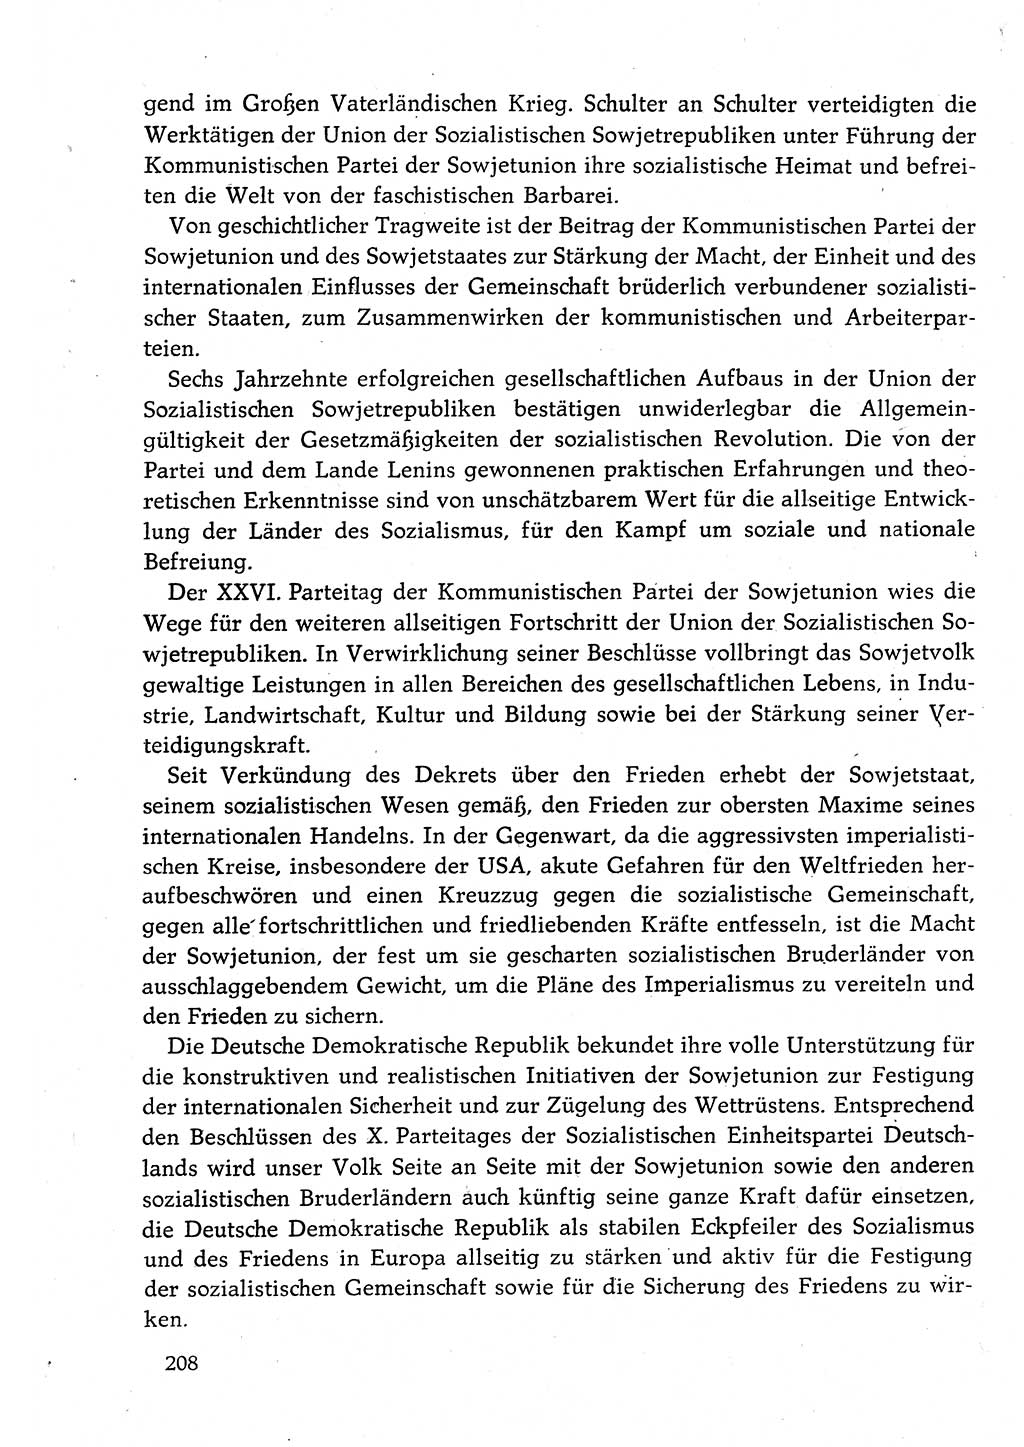 Dokumente der Sozialistischen Einheitspartei Deutschlands (SED) [Deutsche Demokratische Republik (DDR)] 1982-1983, Seite 208 (Dok. SED DDR 1982-1983, S. 208)